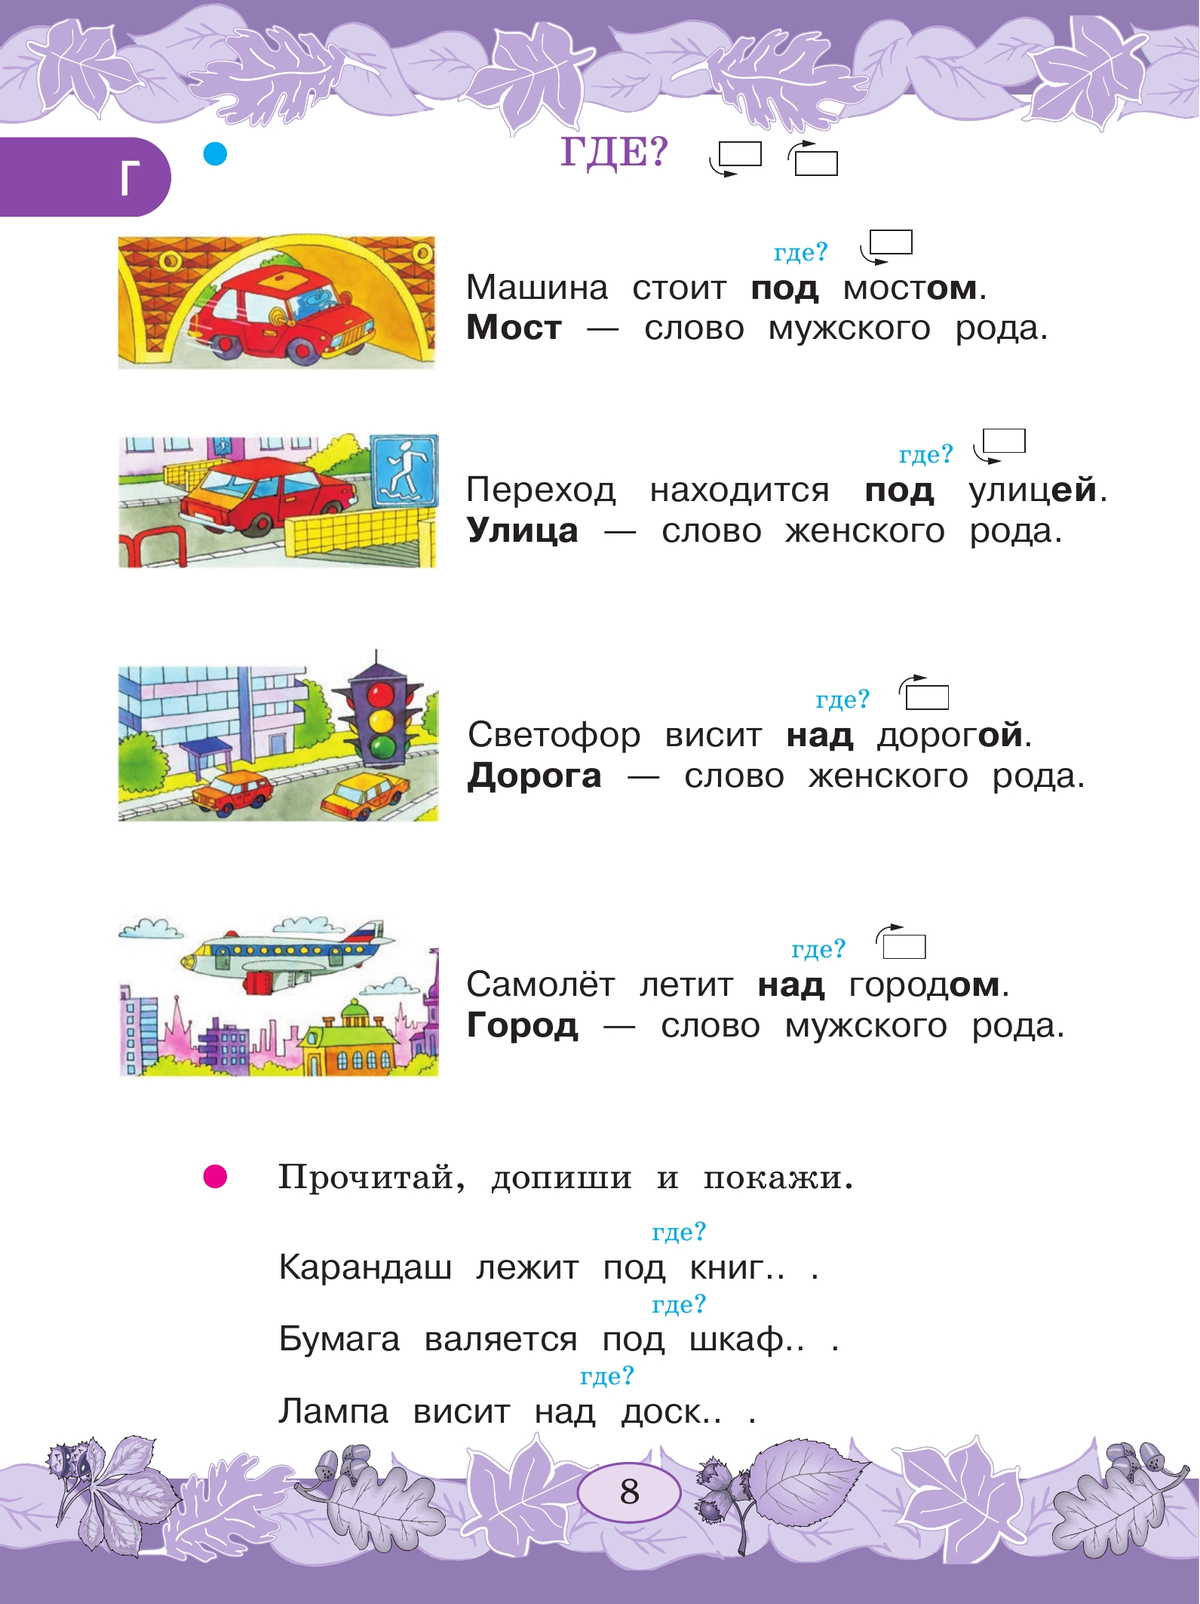 Русский язык. Развитие речи. 3 класс. Учебник. В 2 ч. Часть 2 (для глухих обучающихся) 11